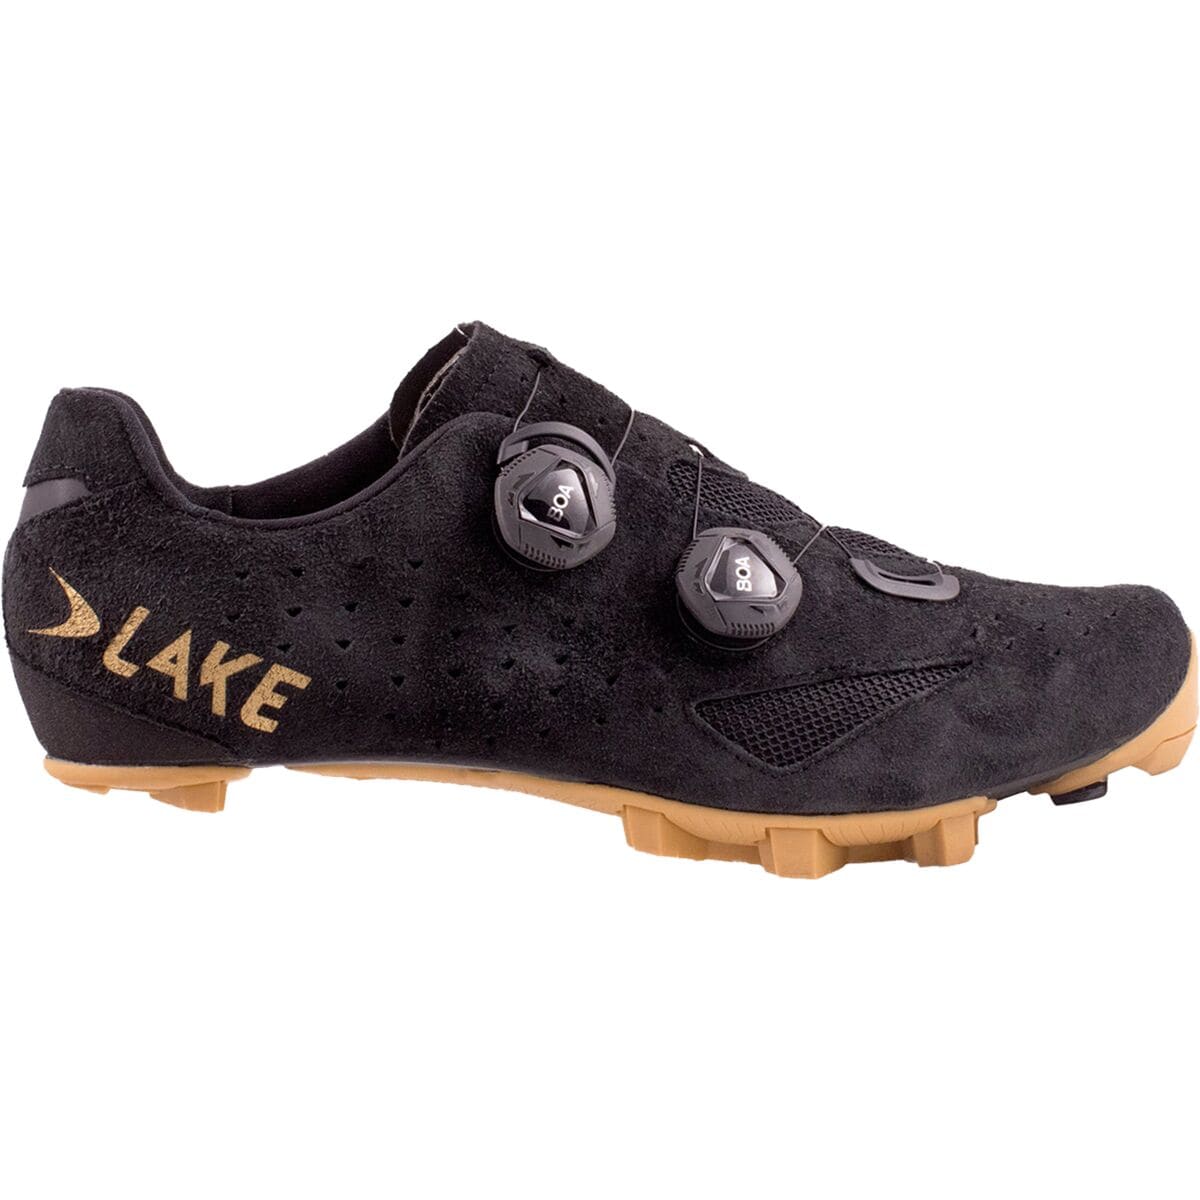 Lake MX238 Wide Gravel Cycling Shoe - Men's